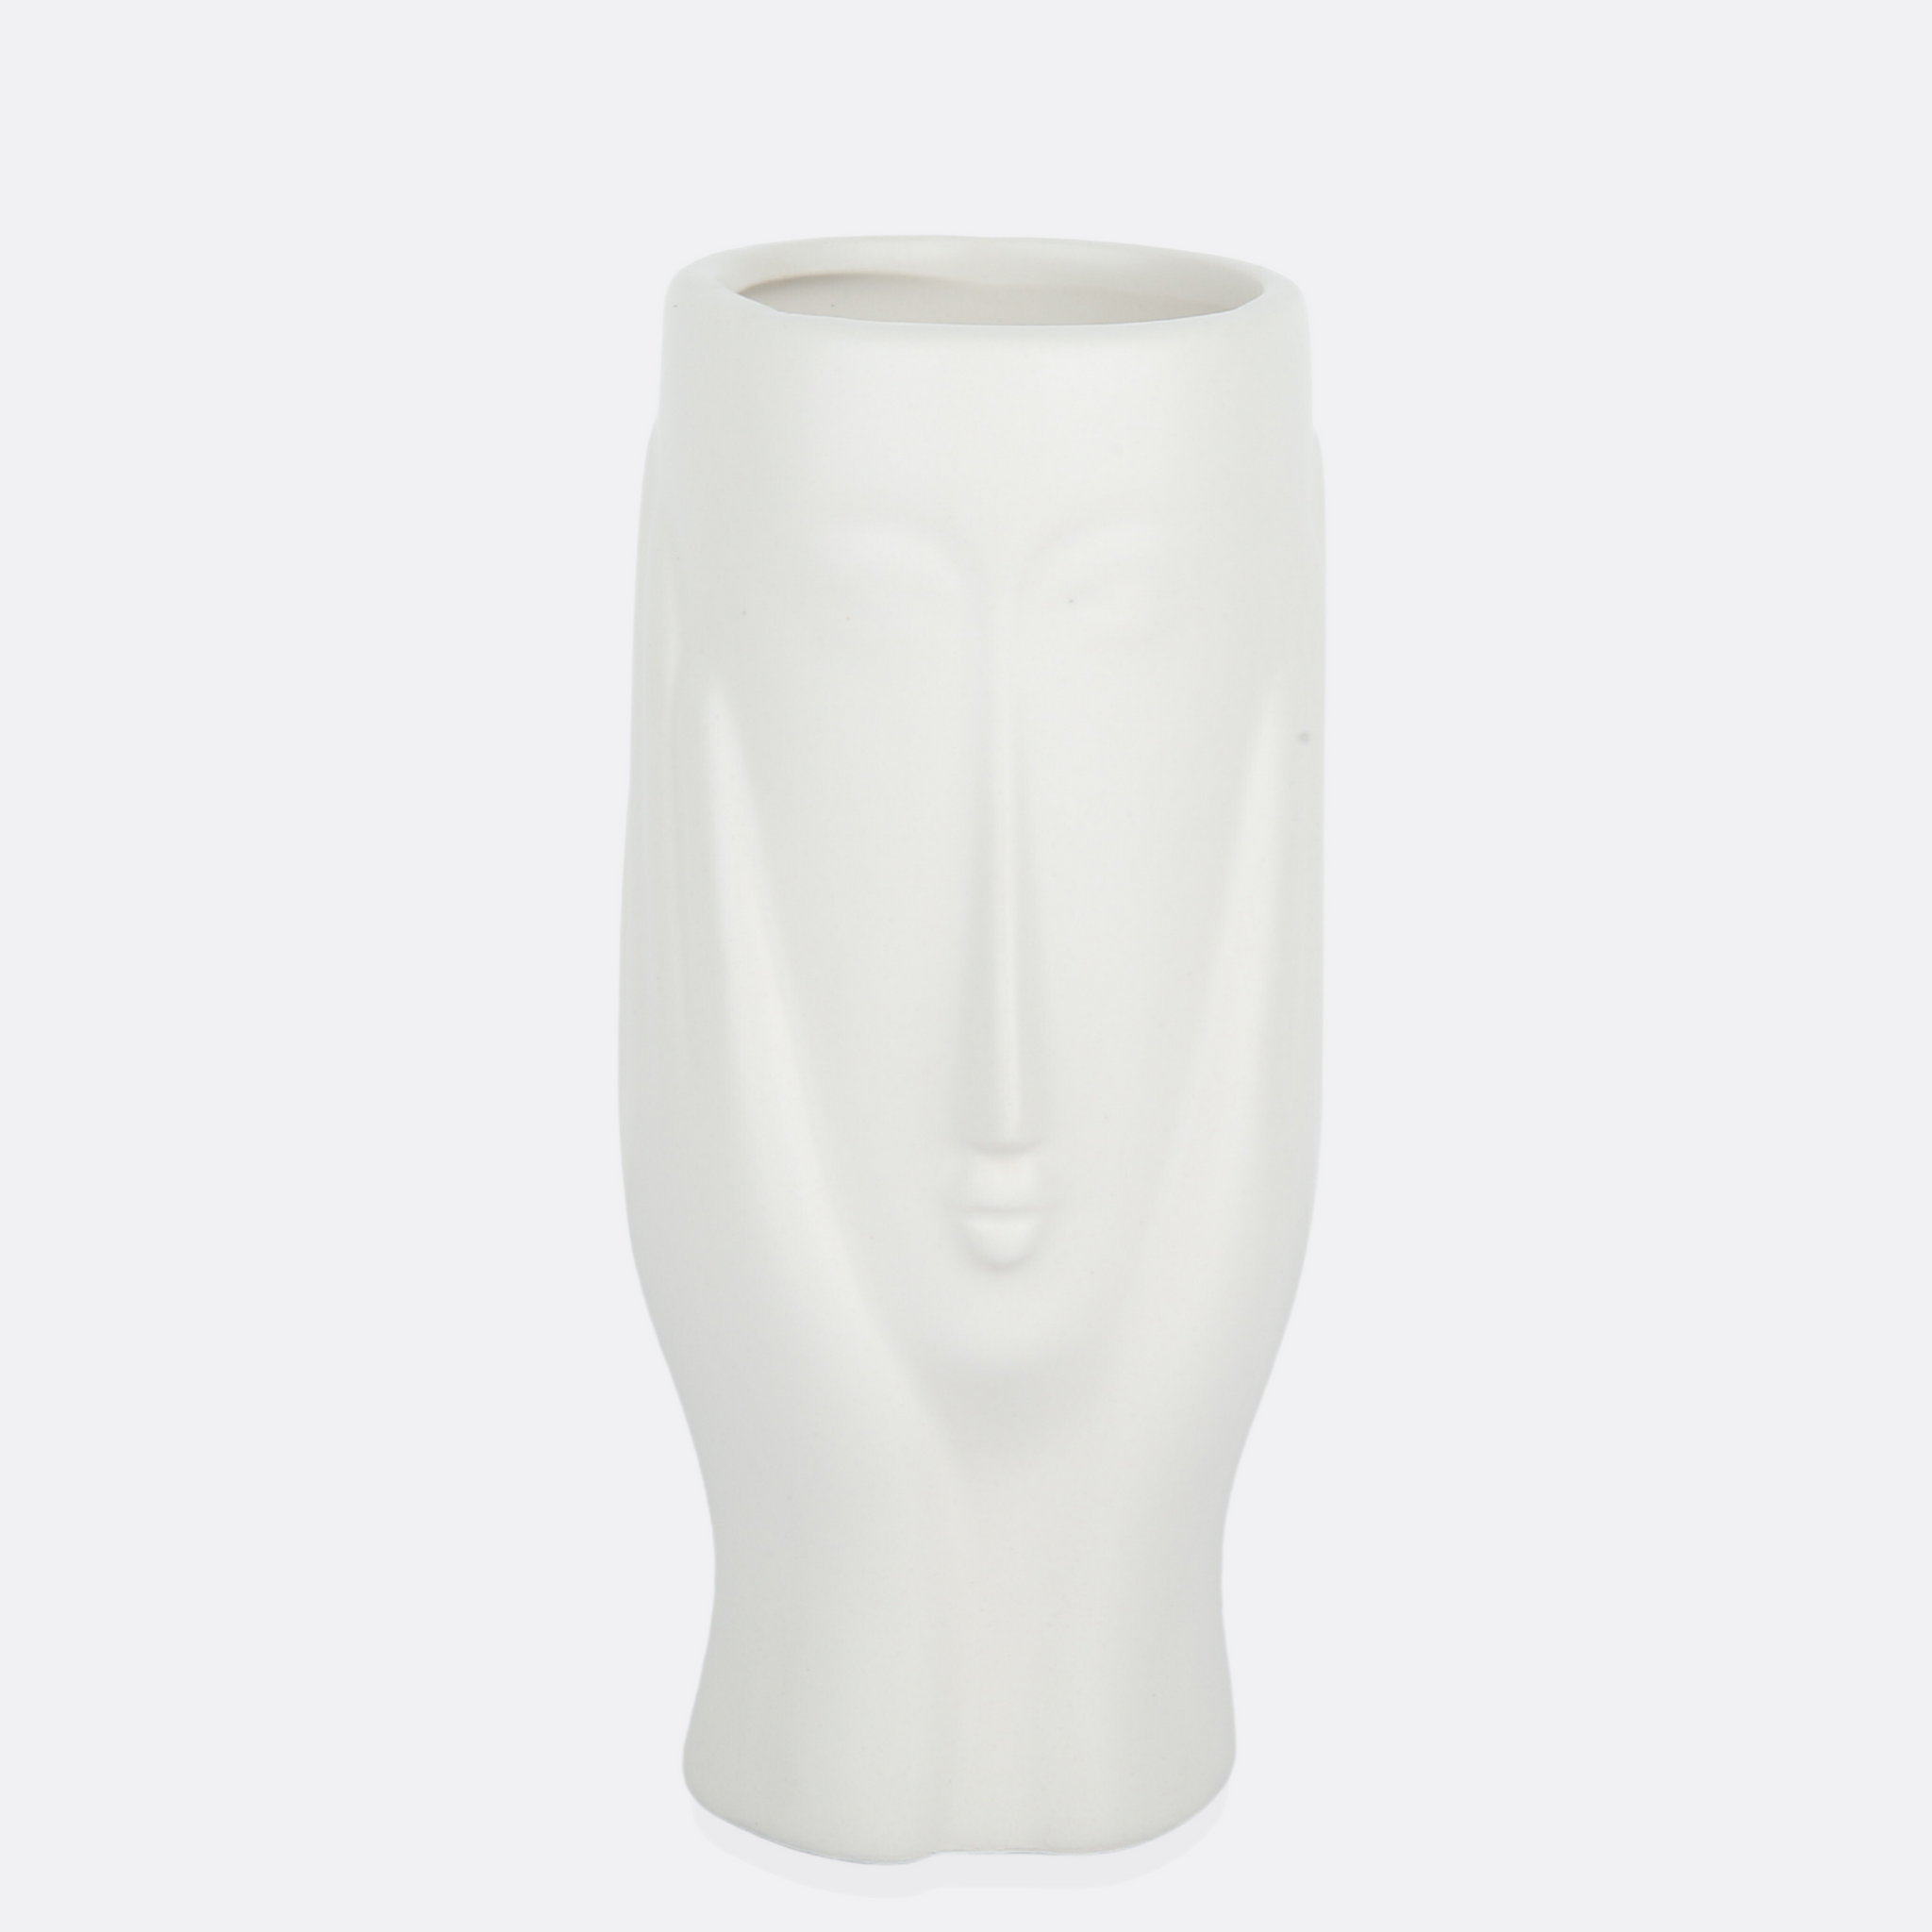 Conjecture Ceramic Vase